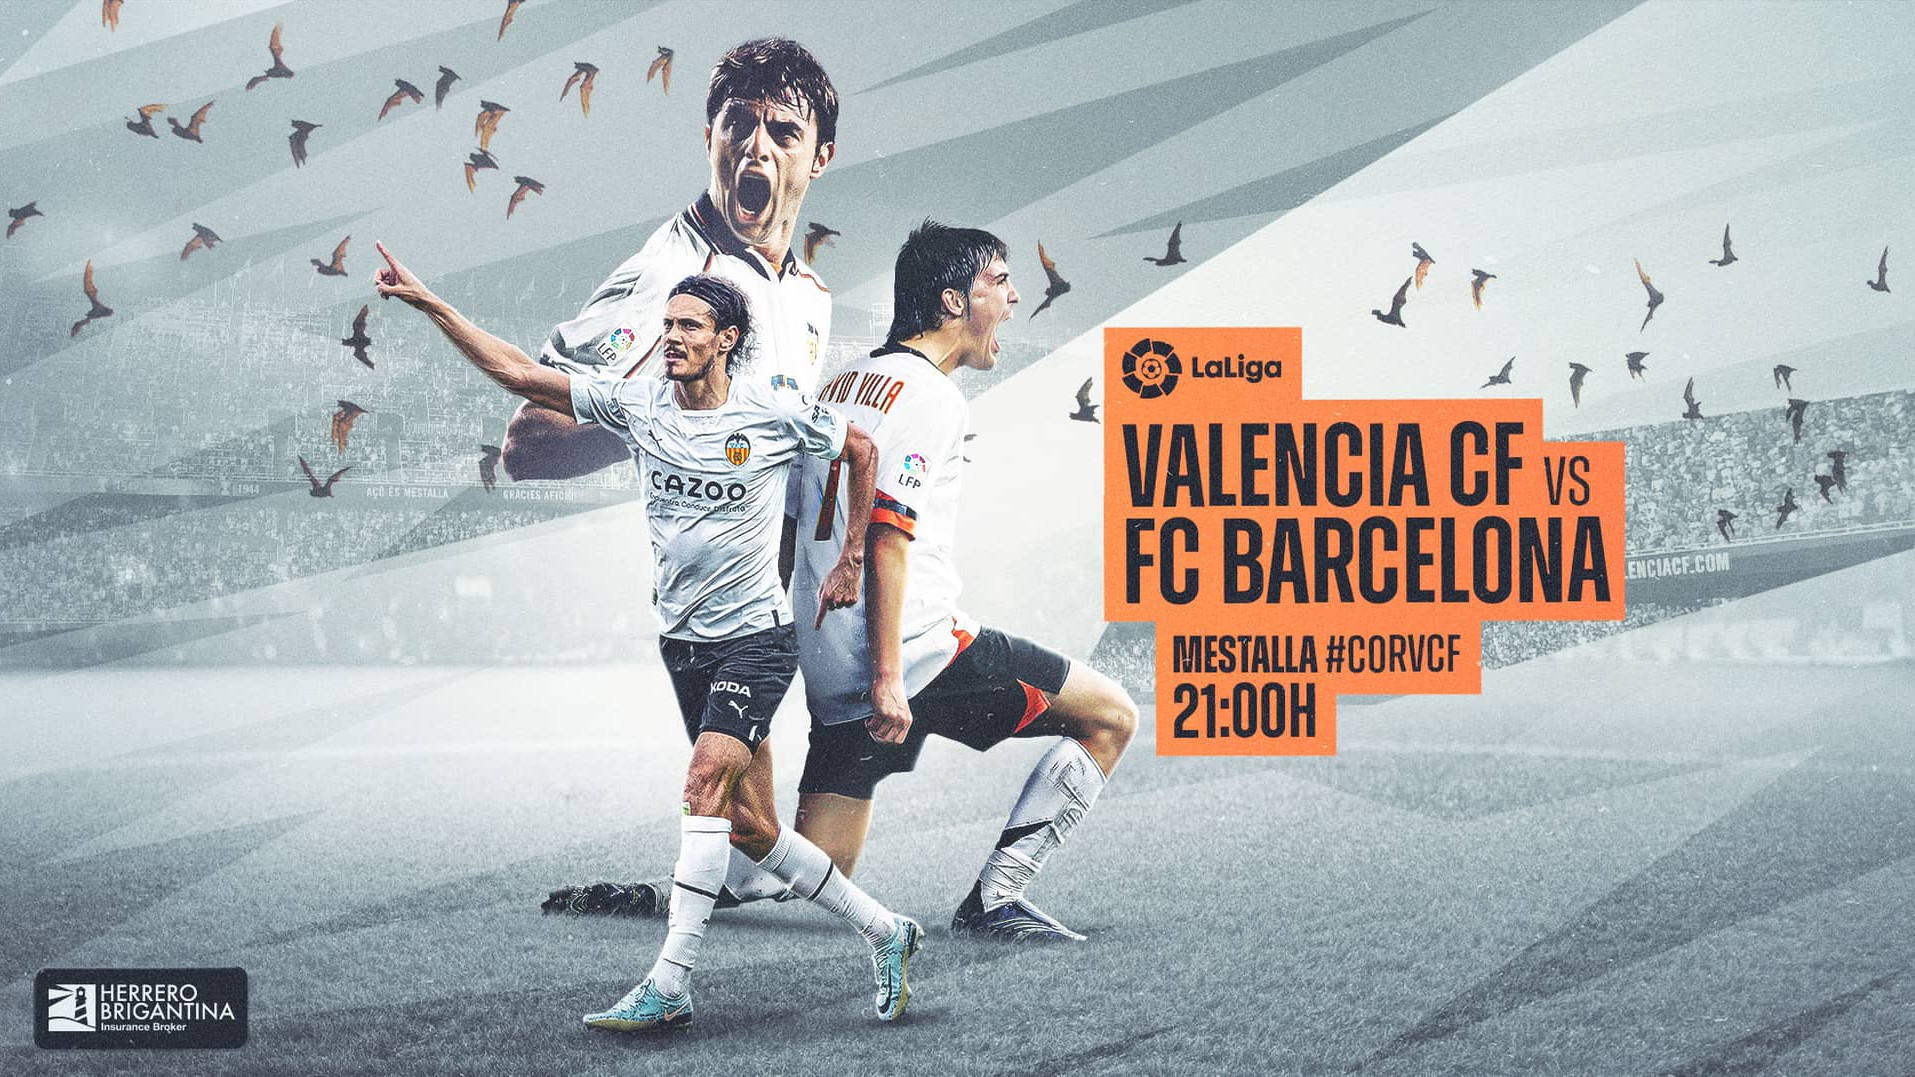 Valencia cf vs fc barcelona timeline